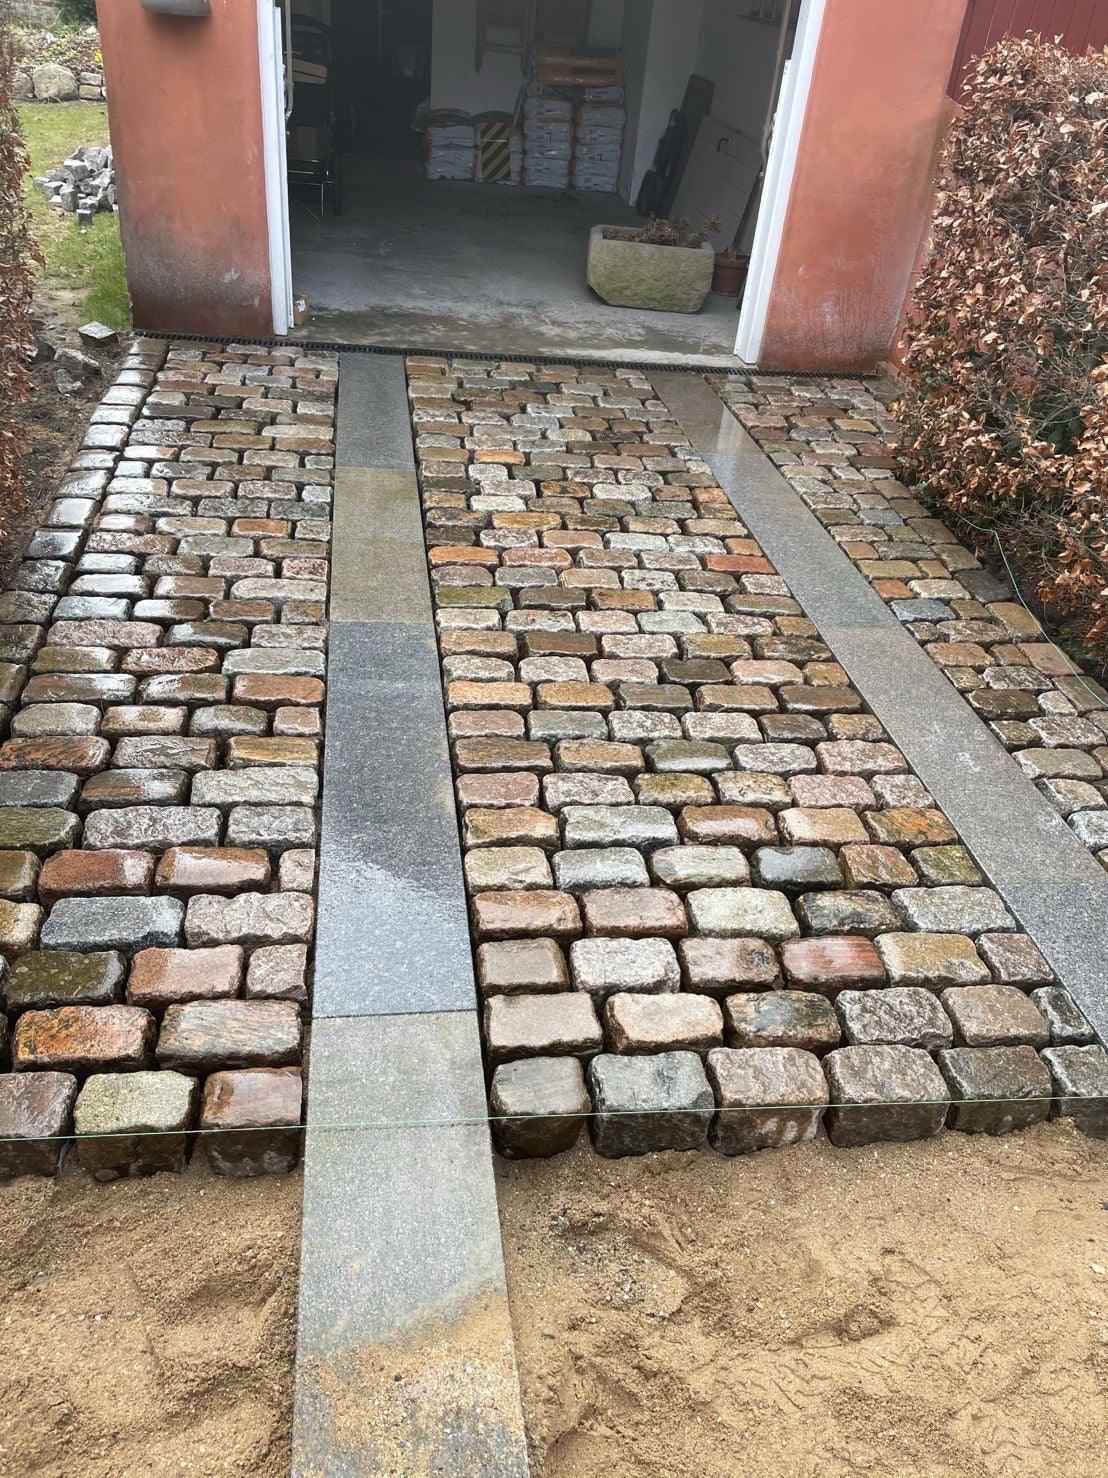 Reclaimed Mixed Granite Stone Cobble / Setts - Reclaimed Brick Company